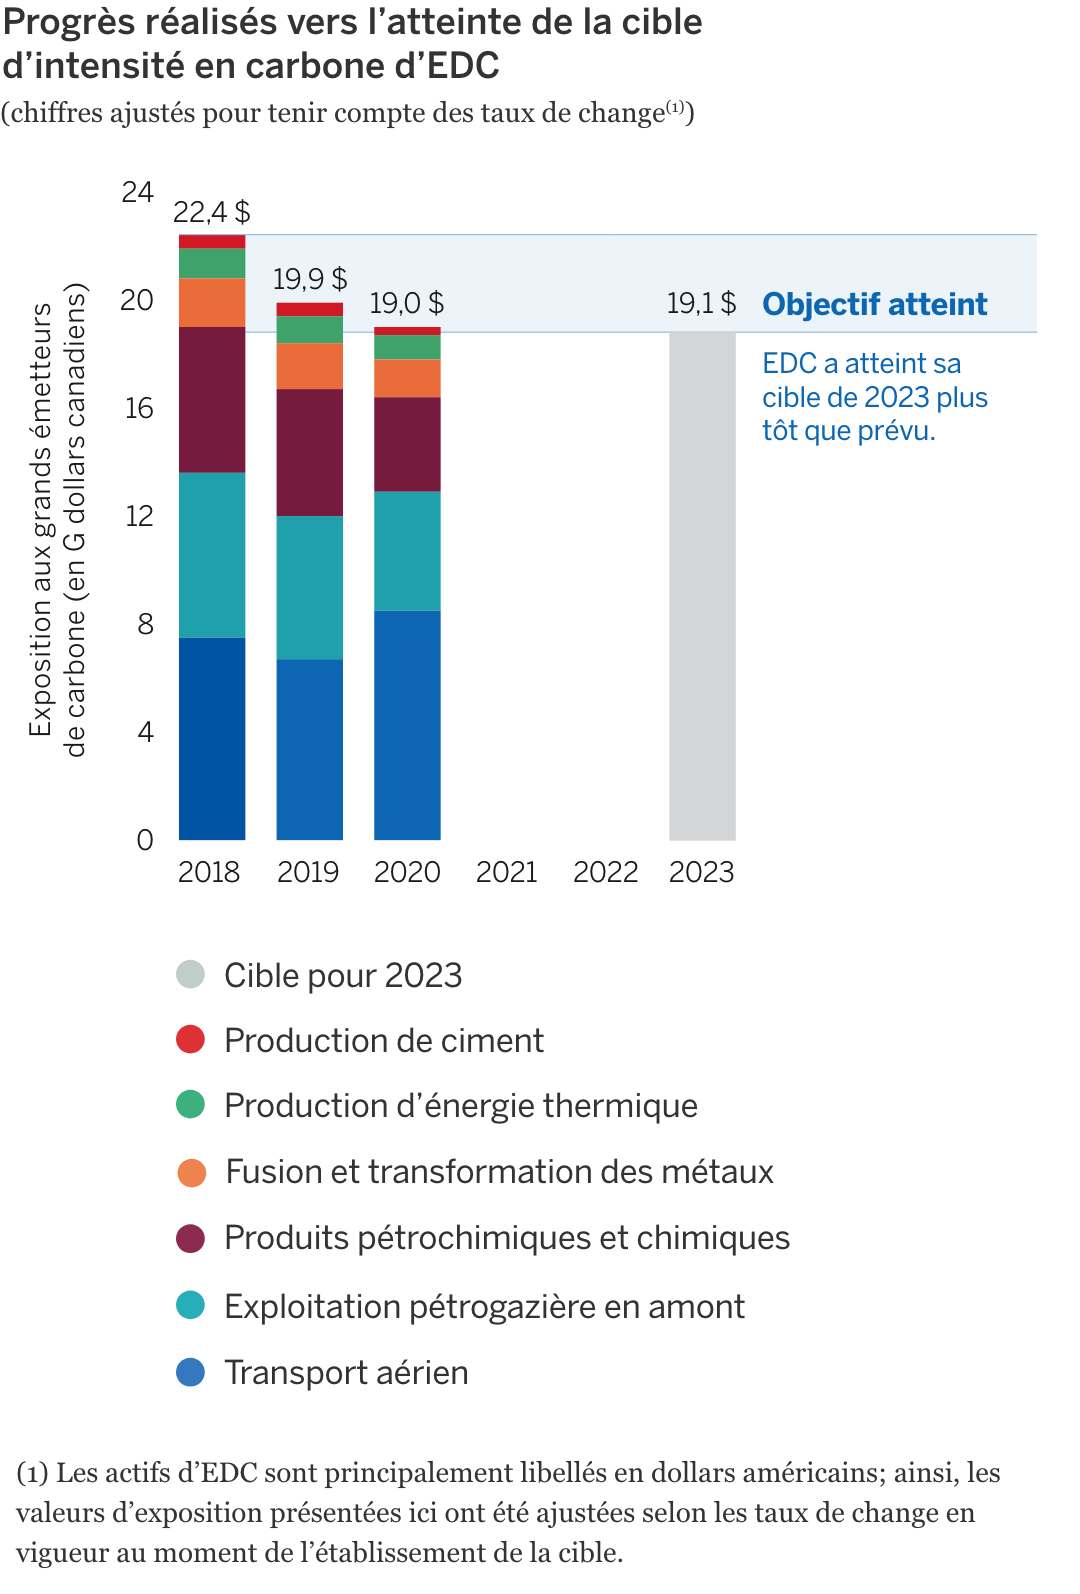 Diagramme à bandes illustrant les progrès réalisés vers l’atteinte de la cible d’intensité carbonique d’EDC